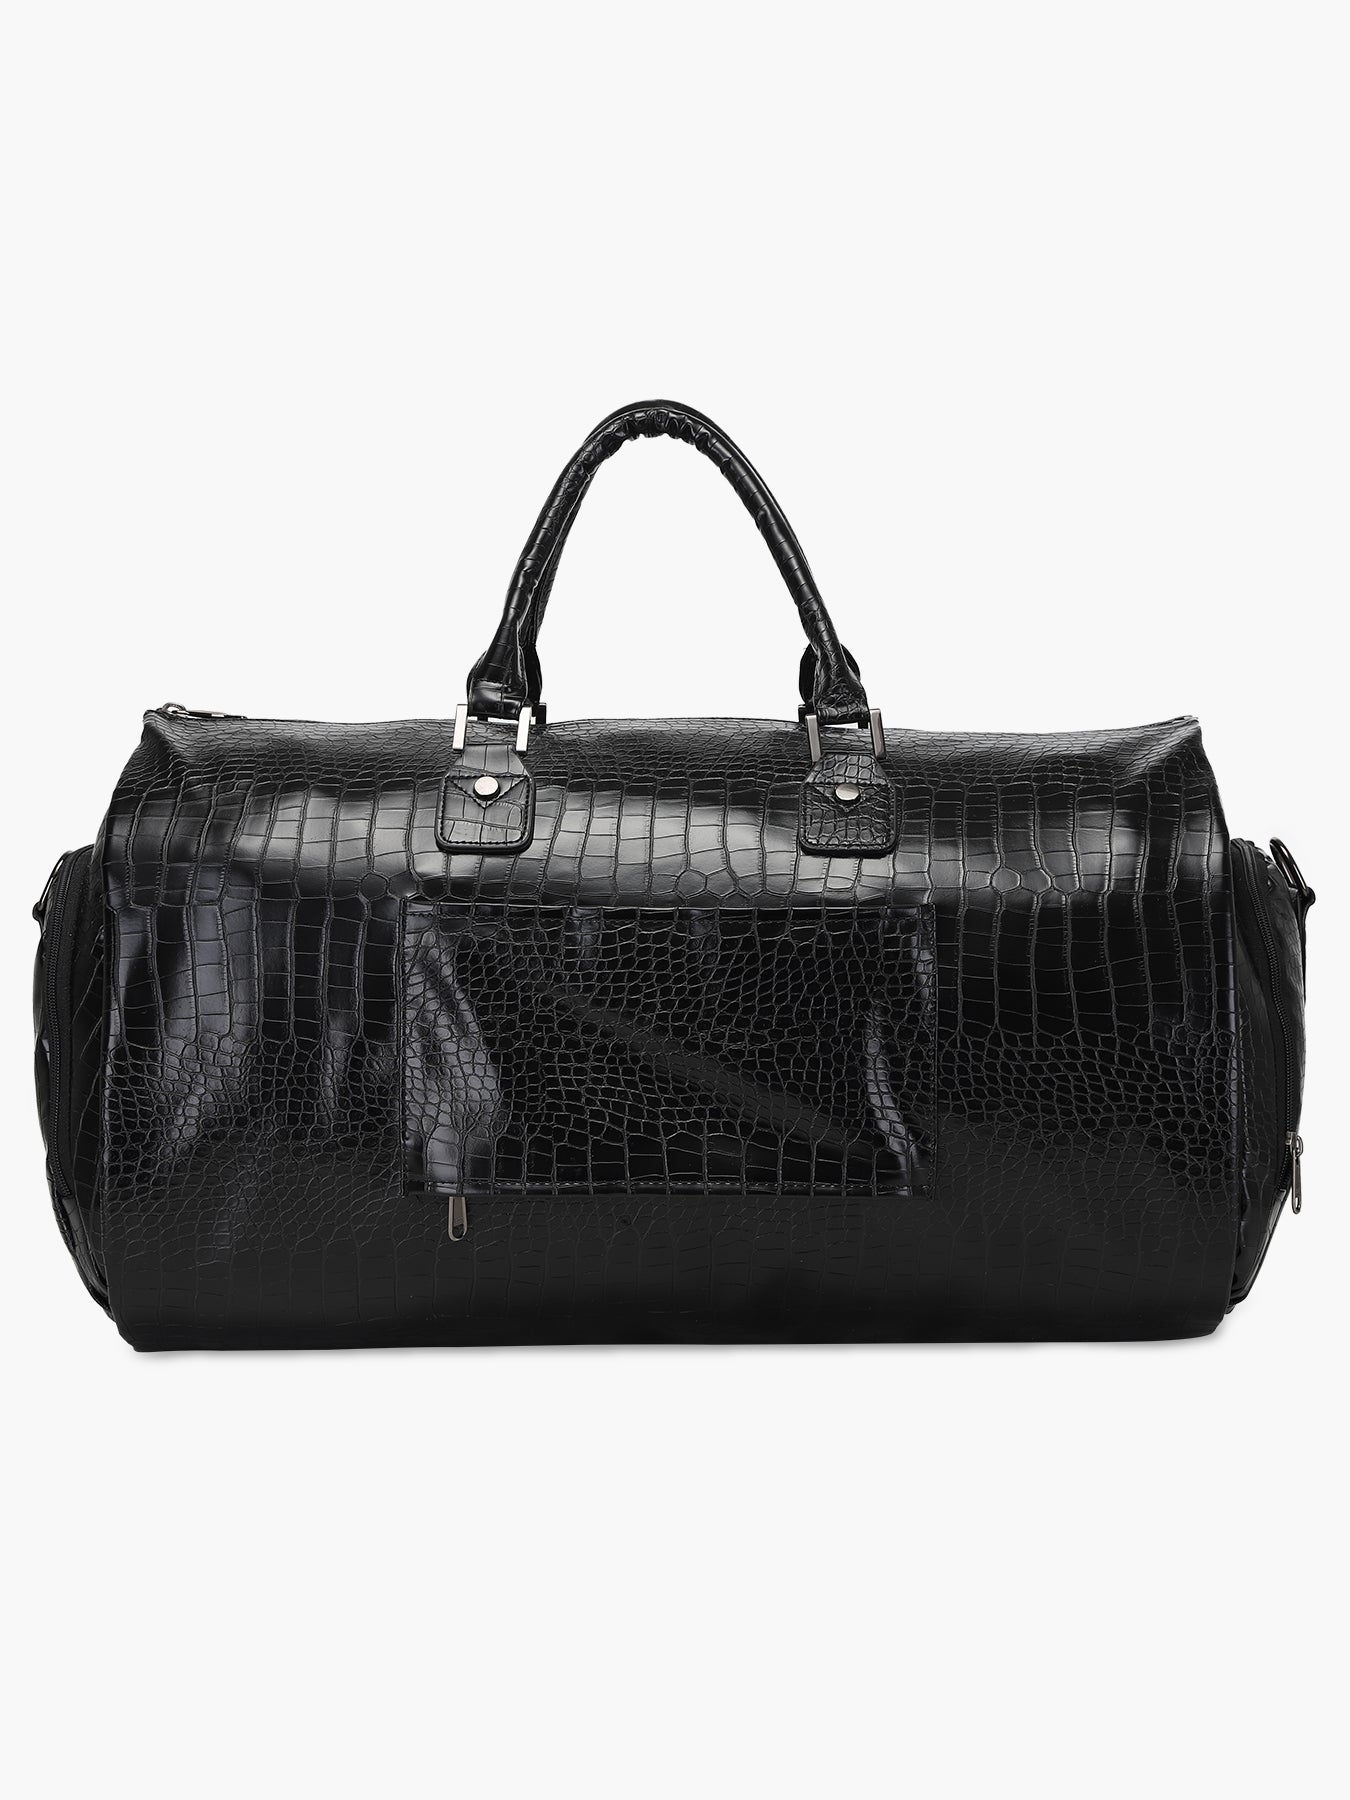 Extra Large Snakeskin Bag Snakeskin Travel Bag Best Duffel 